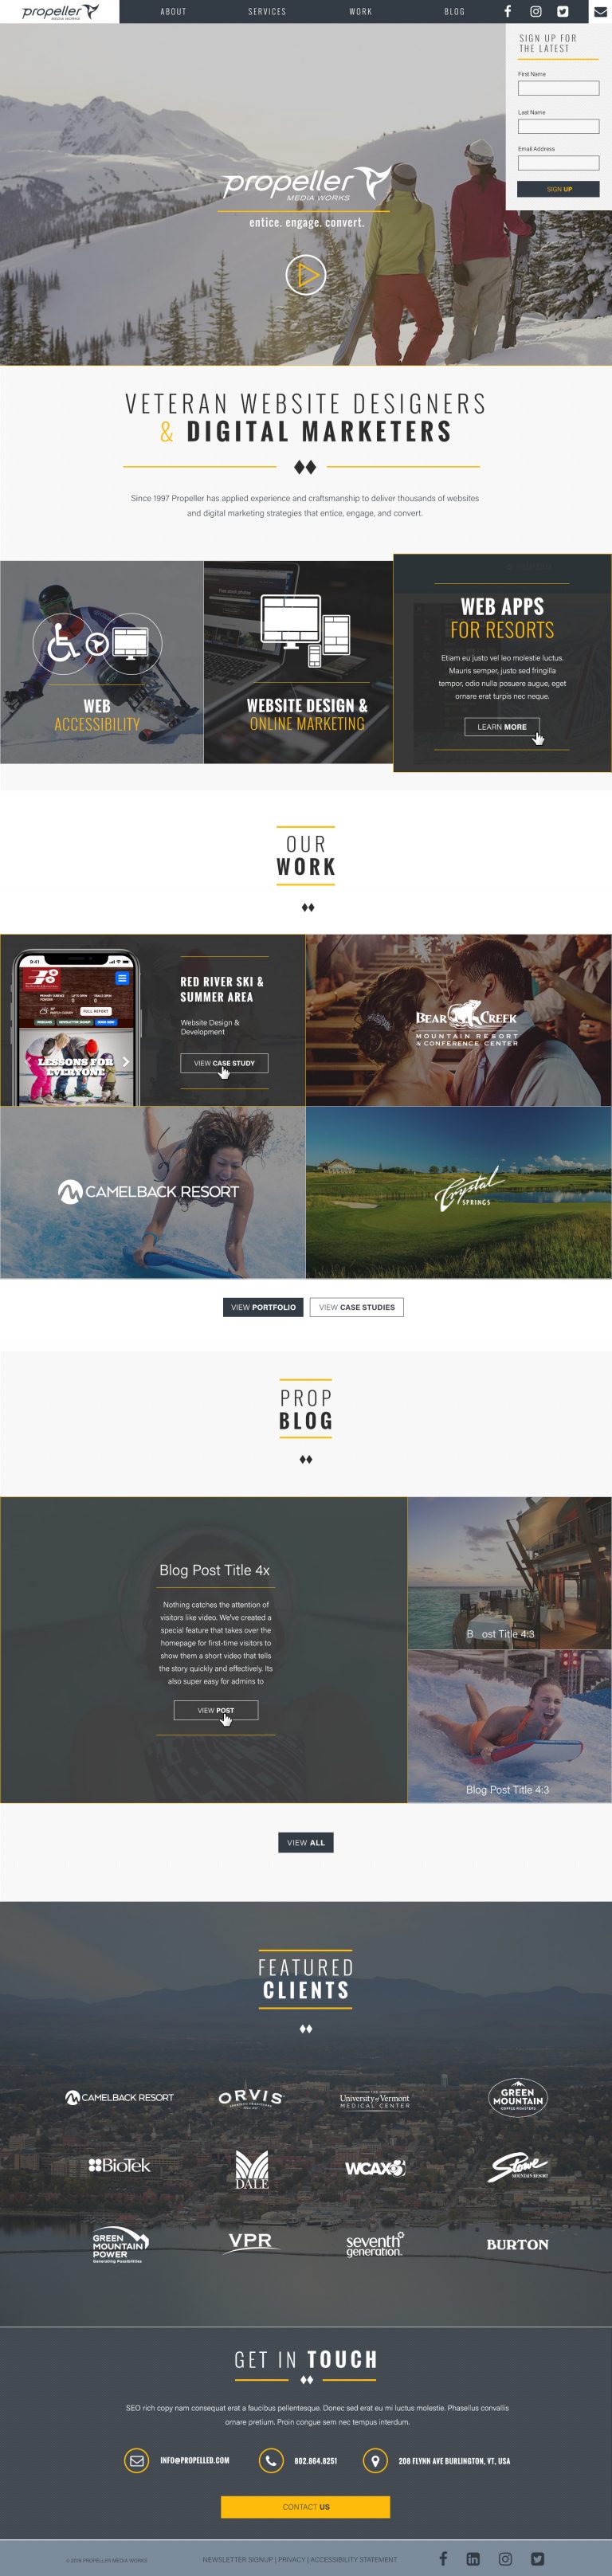 Propeller Media Works Homepage Desktop Design with Active States